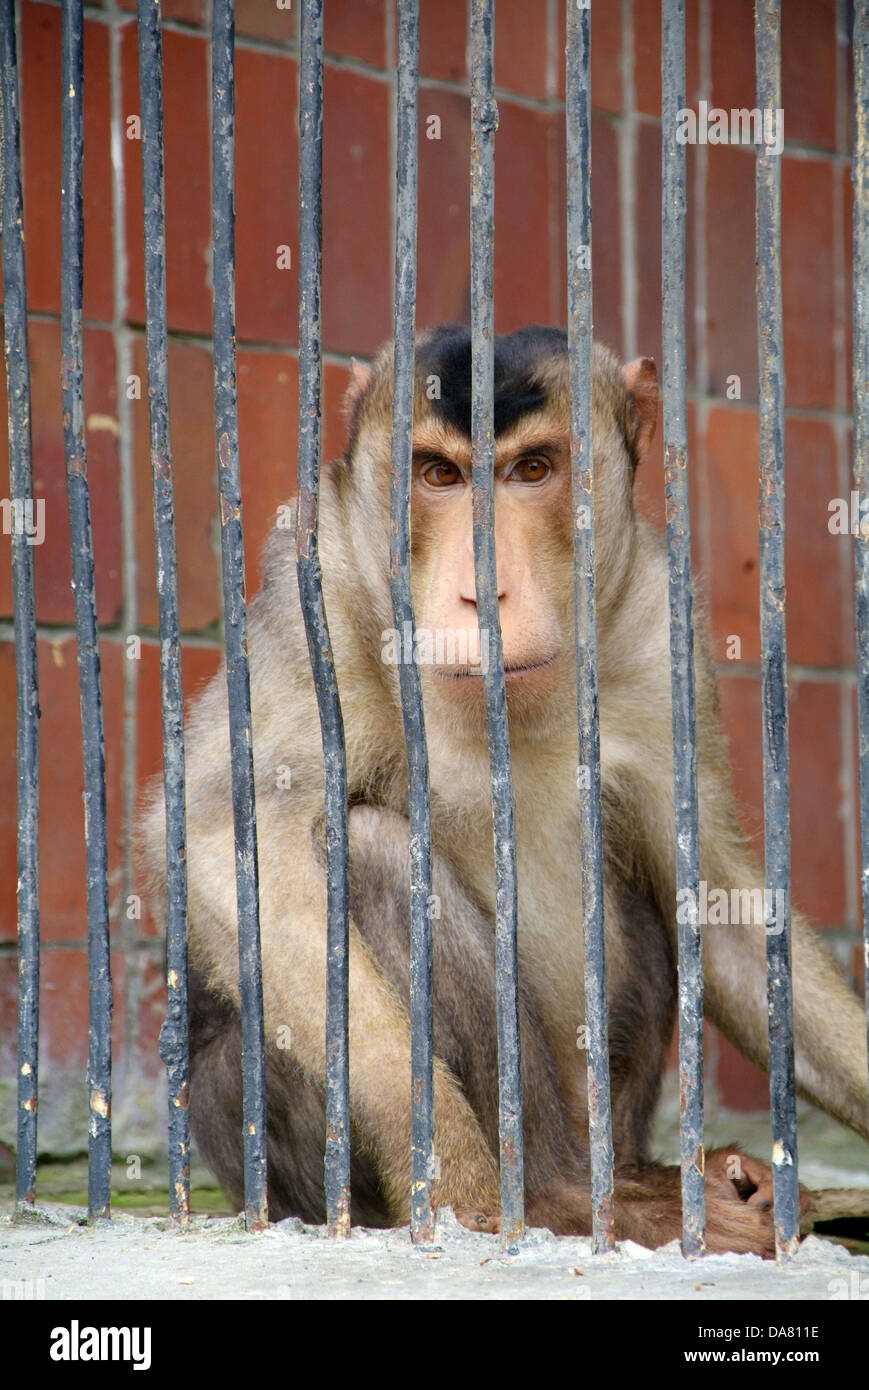 Detrás de las barras de monos en el Zoo. Foto de stock